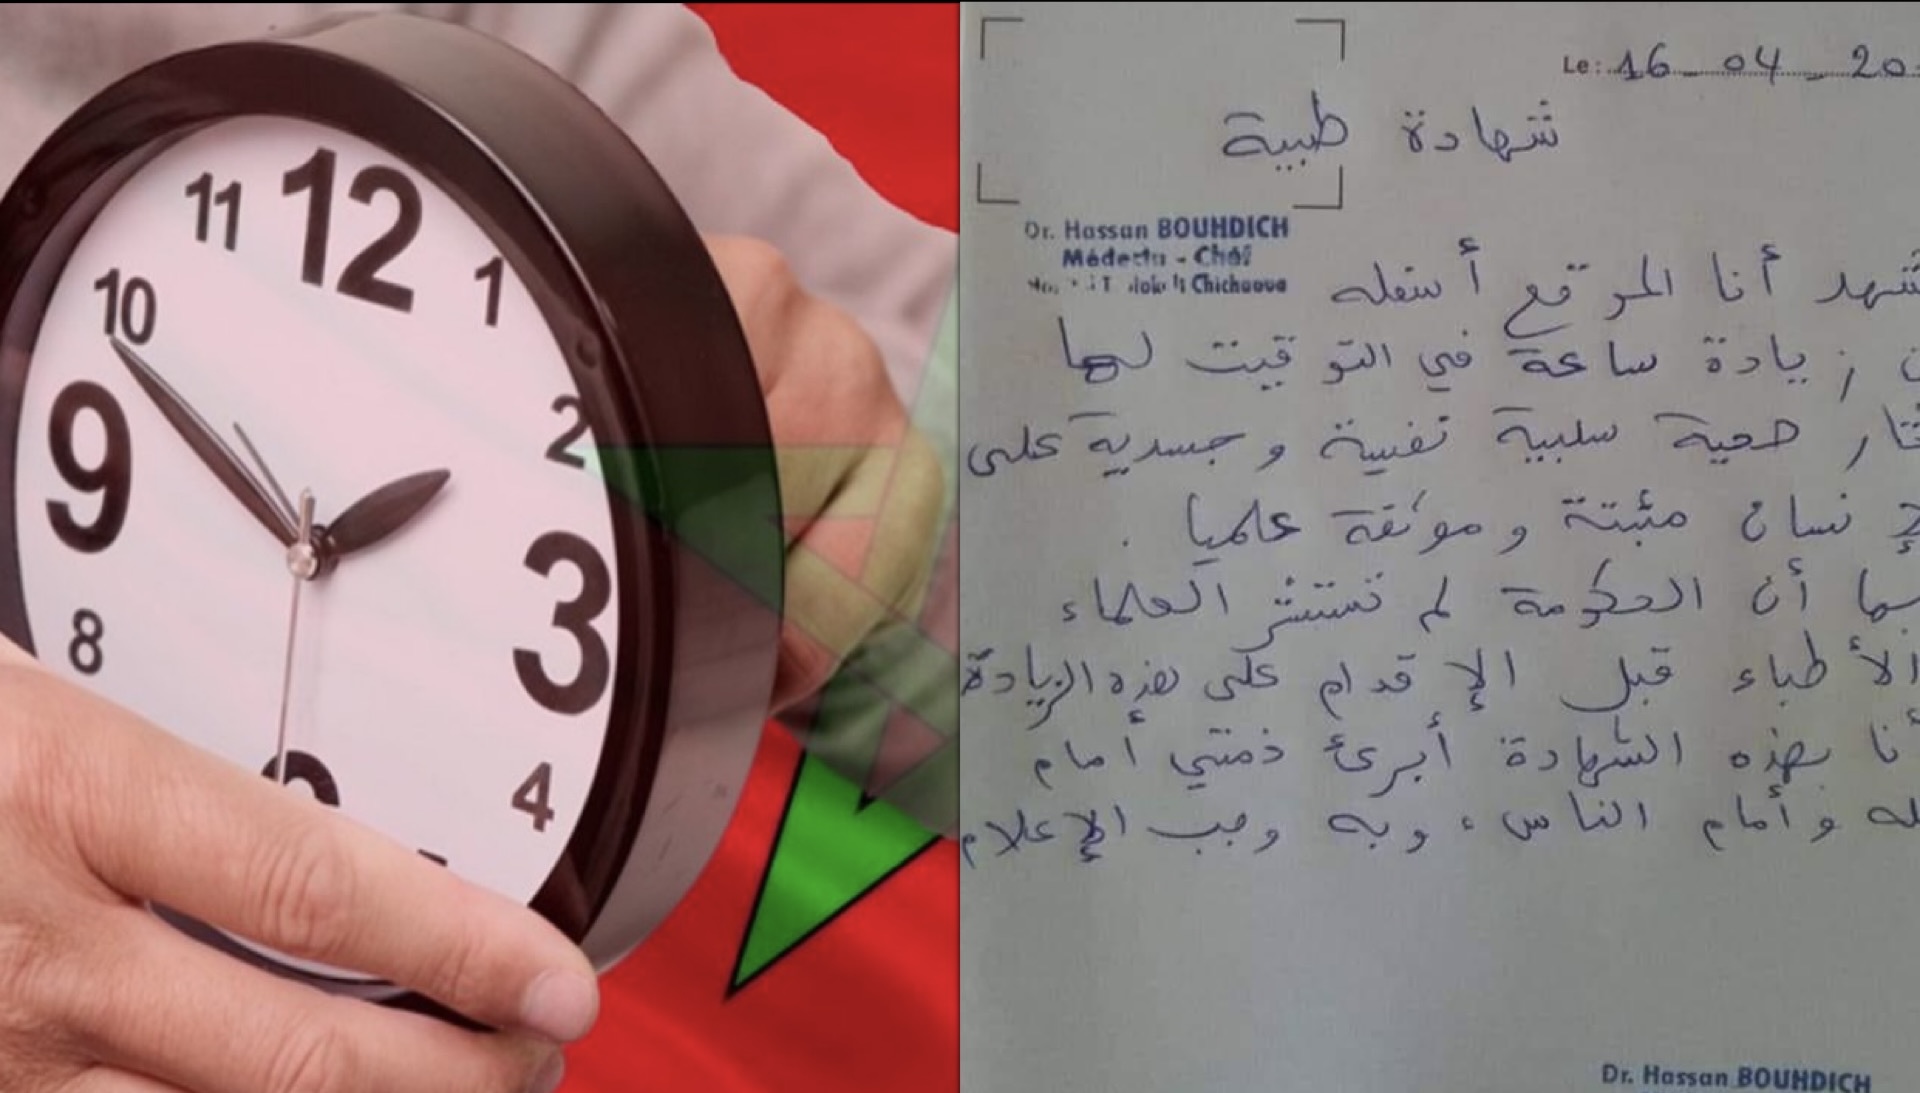 طبيب يعيد إثارة الجدل حول الساعة الإضافية بنشر شهادة طبية تكشف أضرارها على صحة المغاربة